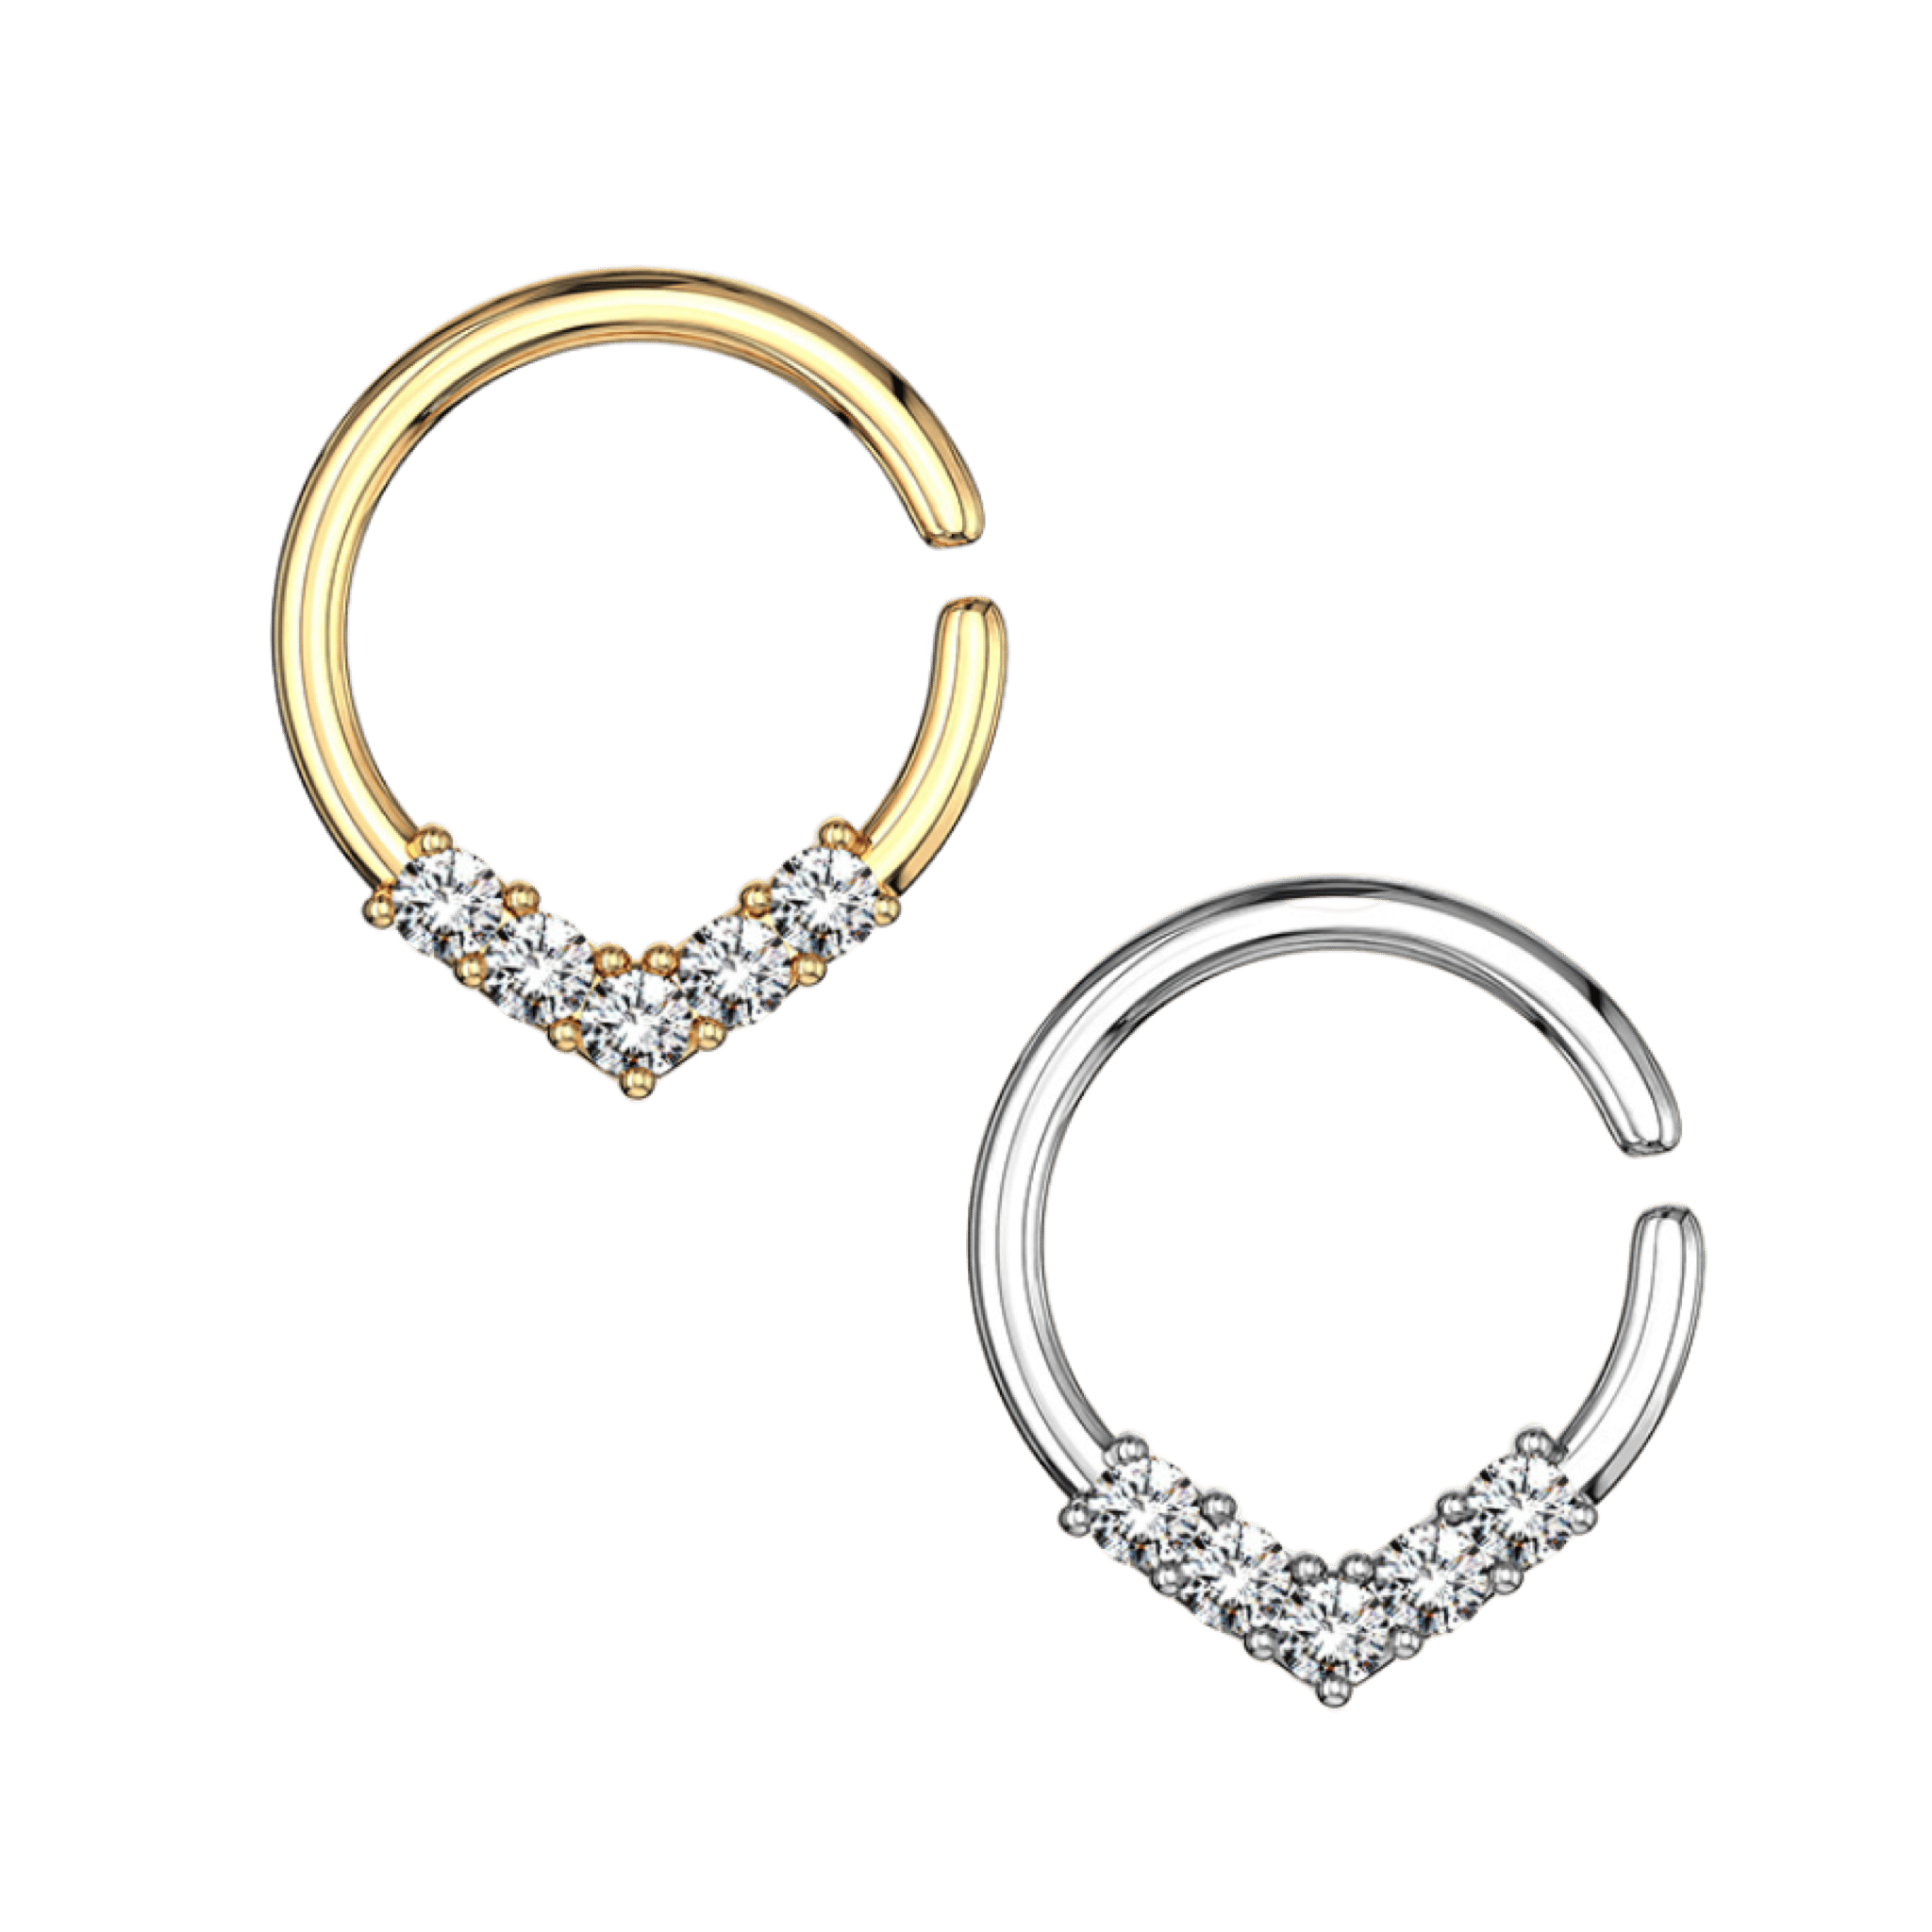 asma stainless steel jewelry seamless hoop